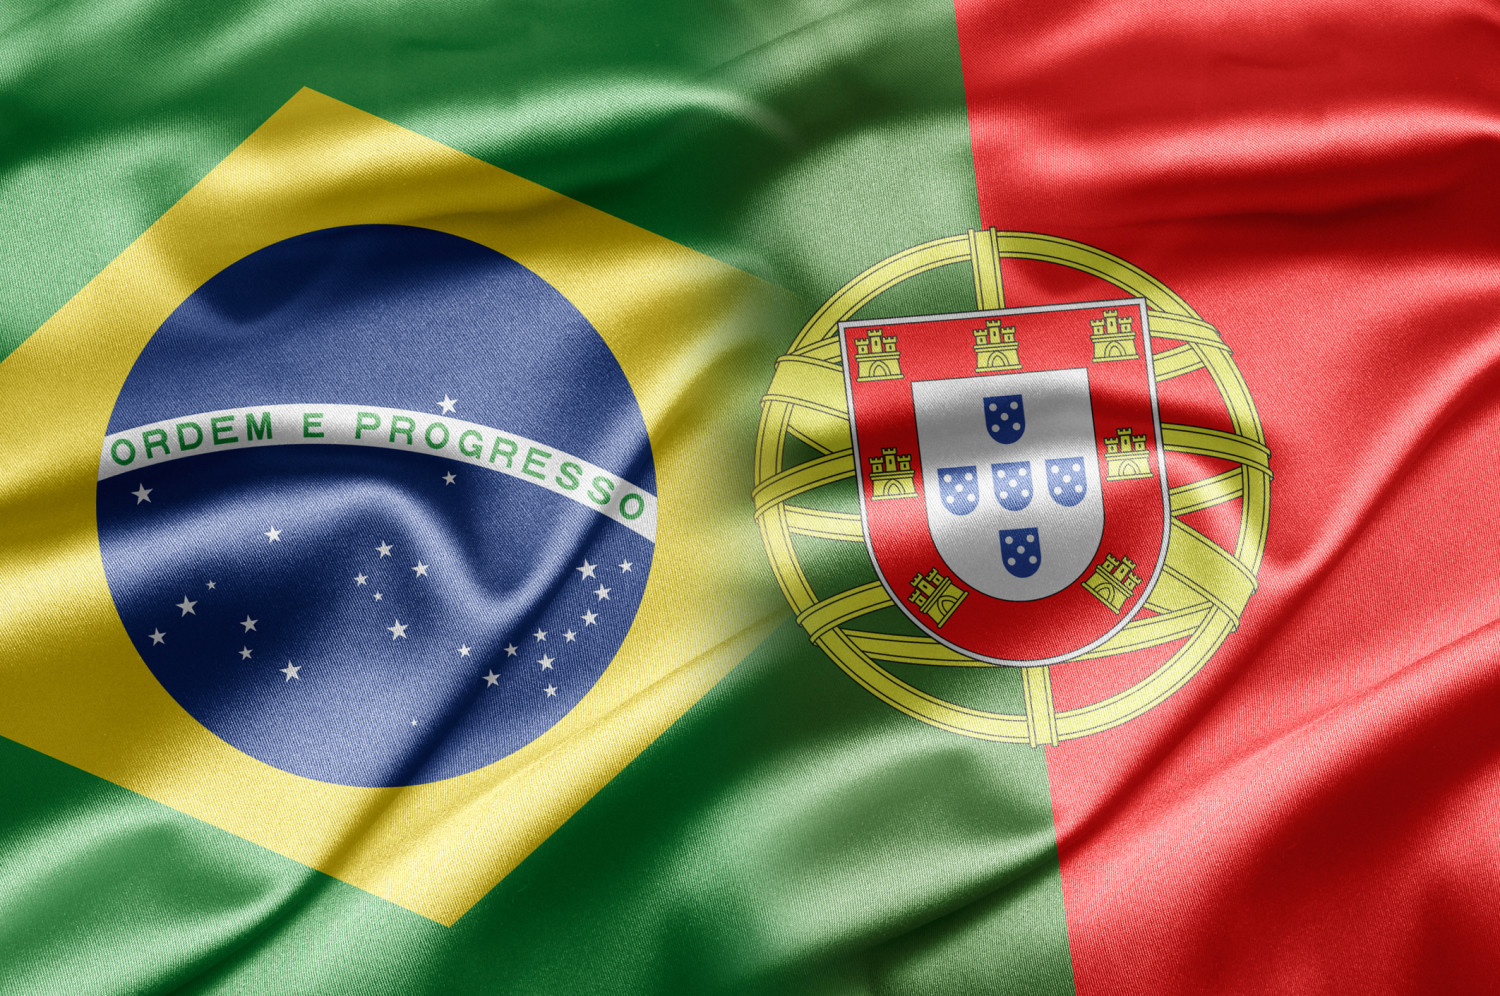 Португальский государственный страны. Португалия и Бразилия. Флаг Бразилии. Португальский язык в Бразилии. Флаг Португалии и Бразилии.